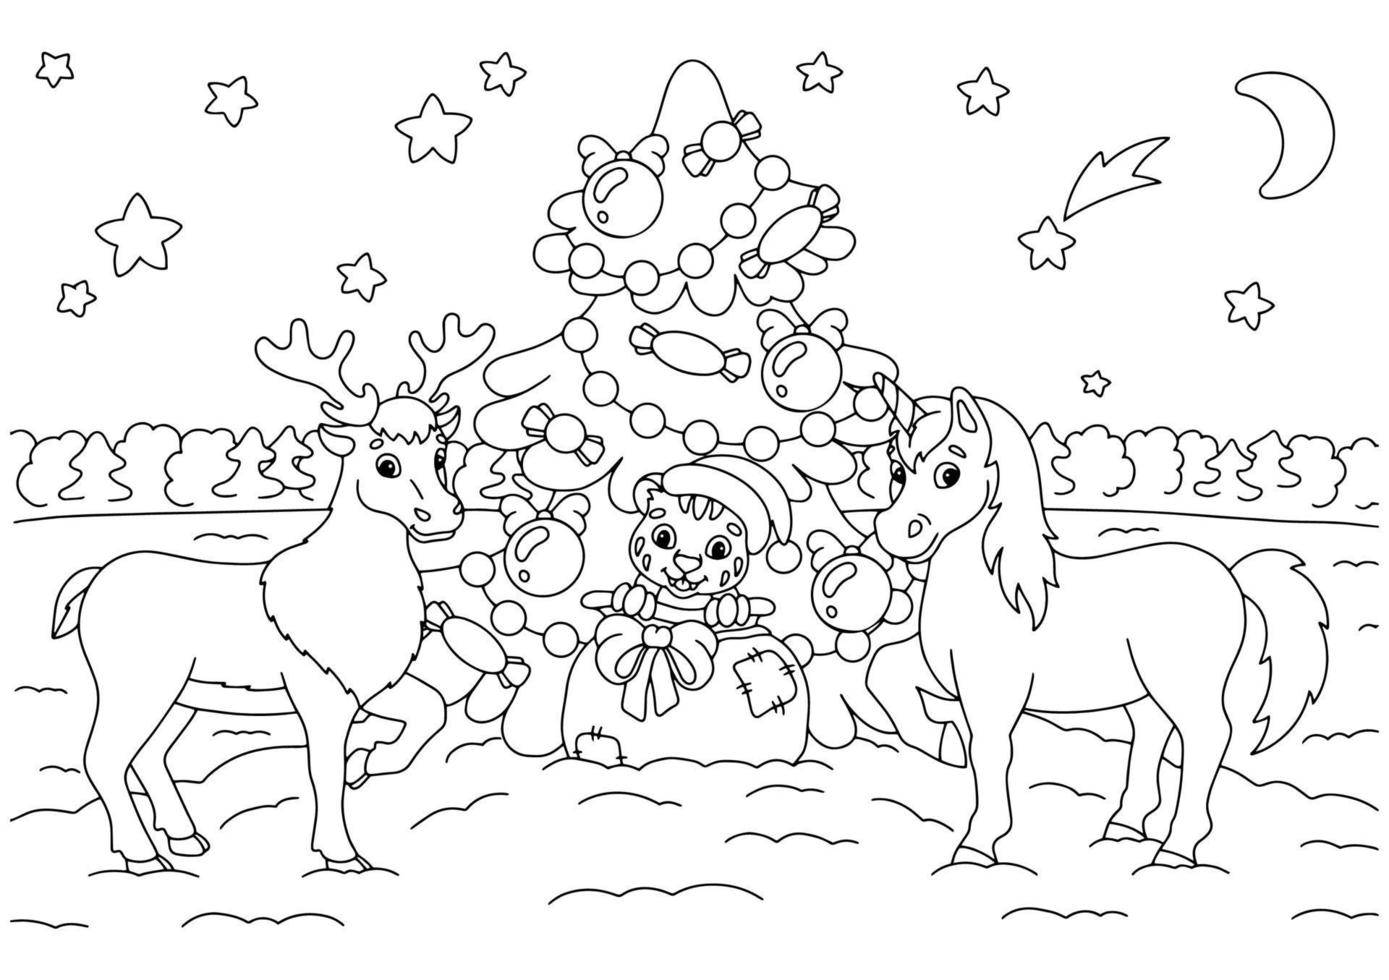 cervo, cucciolo di tigre e unicorno festeggiano il nuovo anno. pagina del libro da colorare per bambini. personaggio in stile cartone animato. illustrazione vettoriale isolato su sfondo bianco.